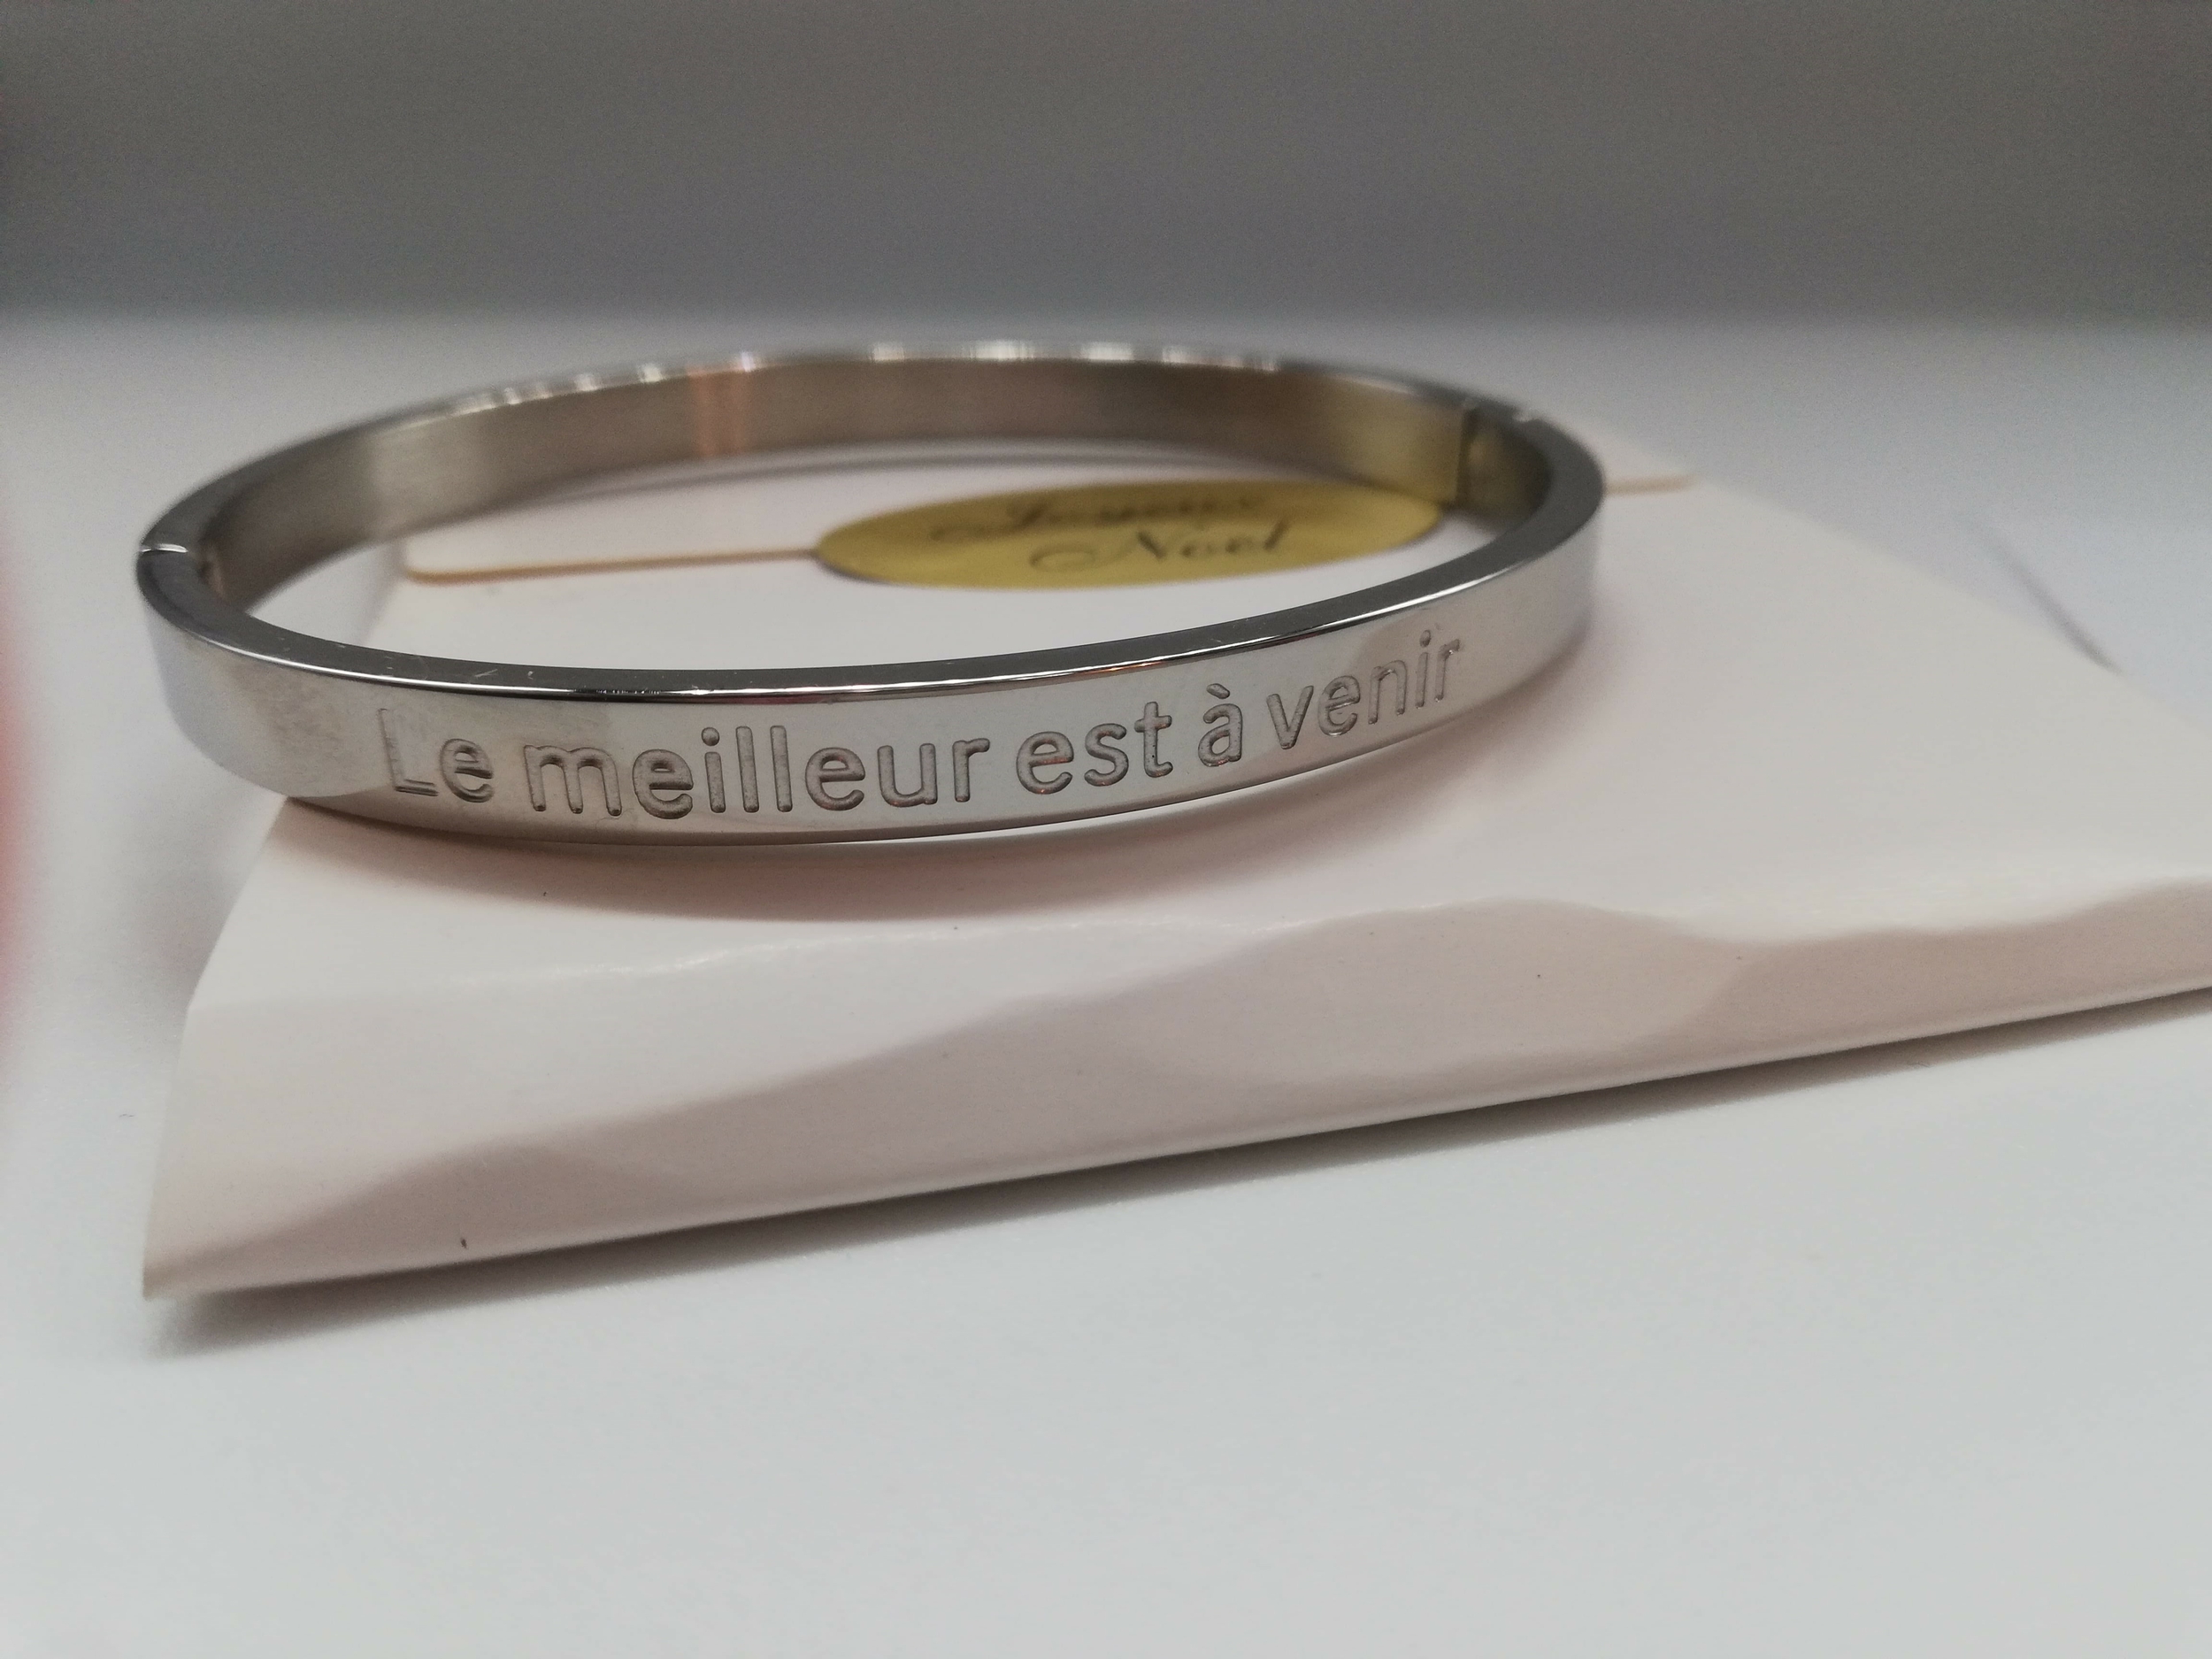 cadeau de noel amoureux bracelet personnalisé Le meilleur est à venir avec sa carte d'amour